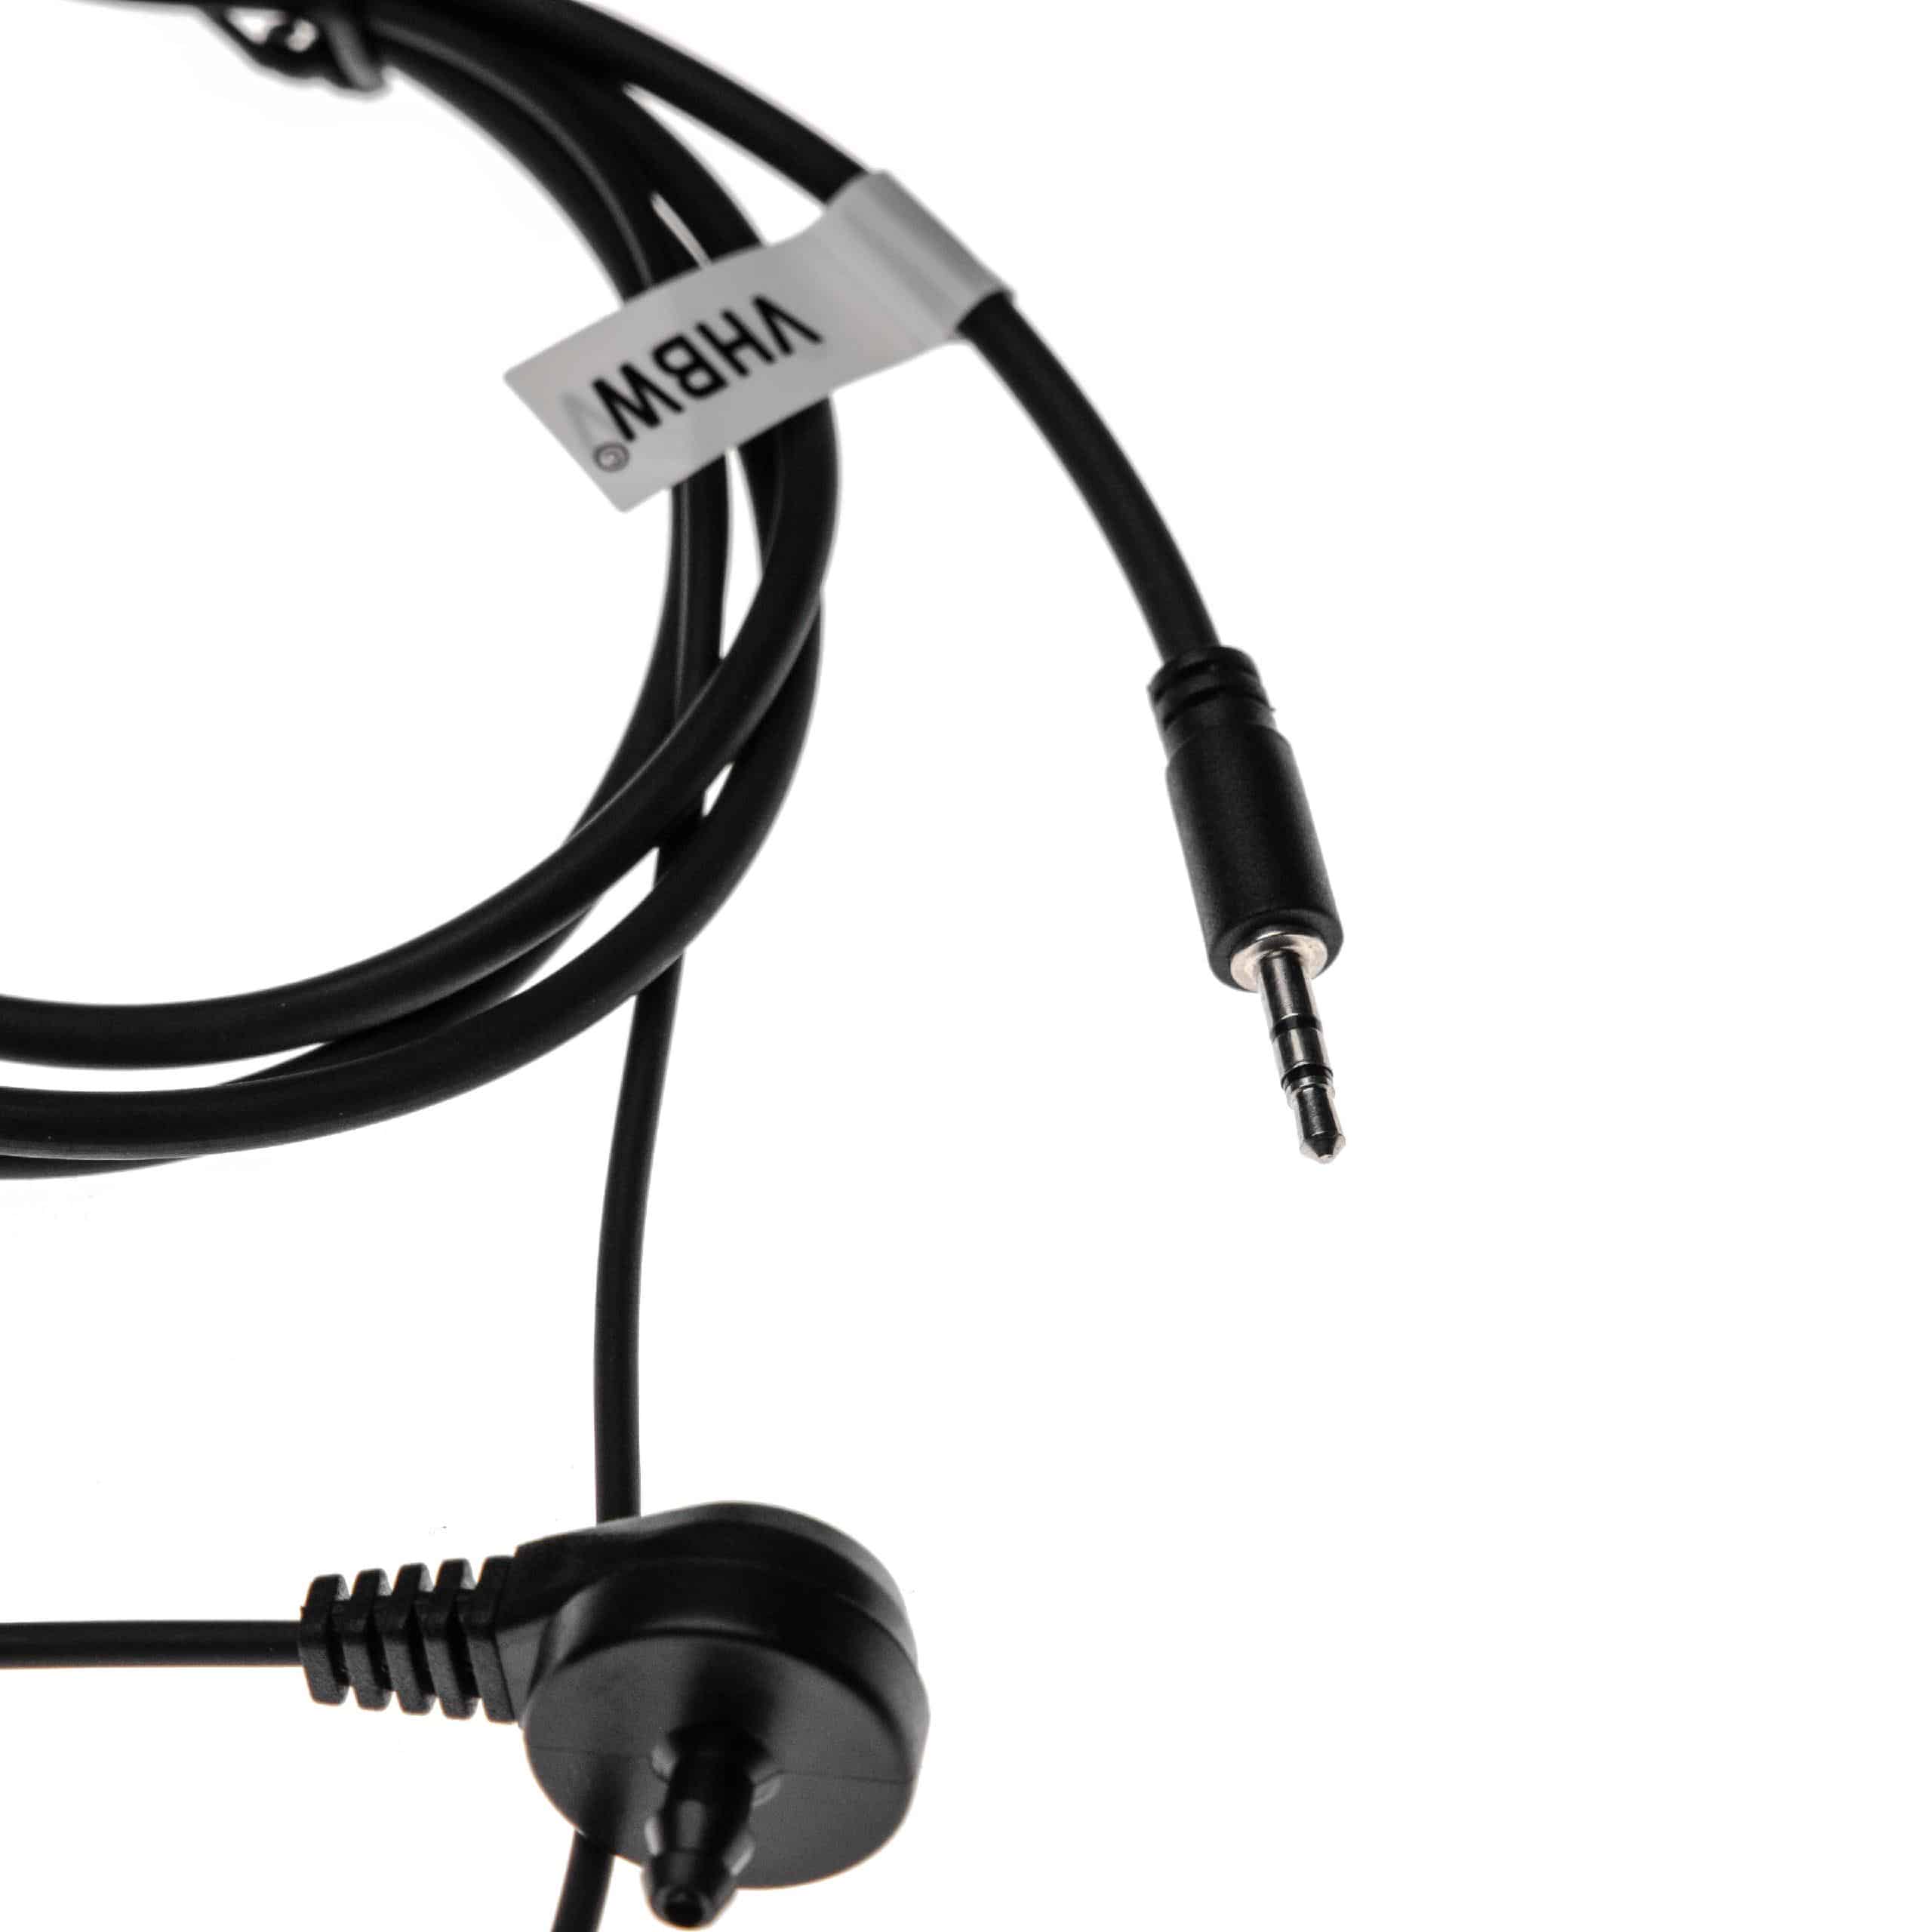 Auriculares para transceptor Cobra PR240 + micrófono push-to-talk + soporte clip + tubo acústico transparente